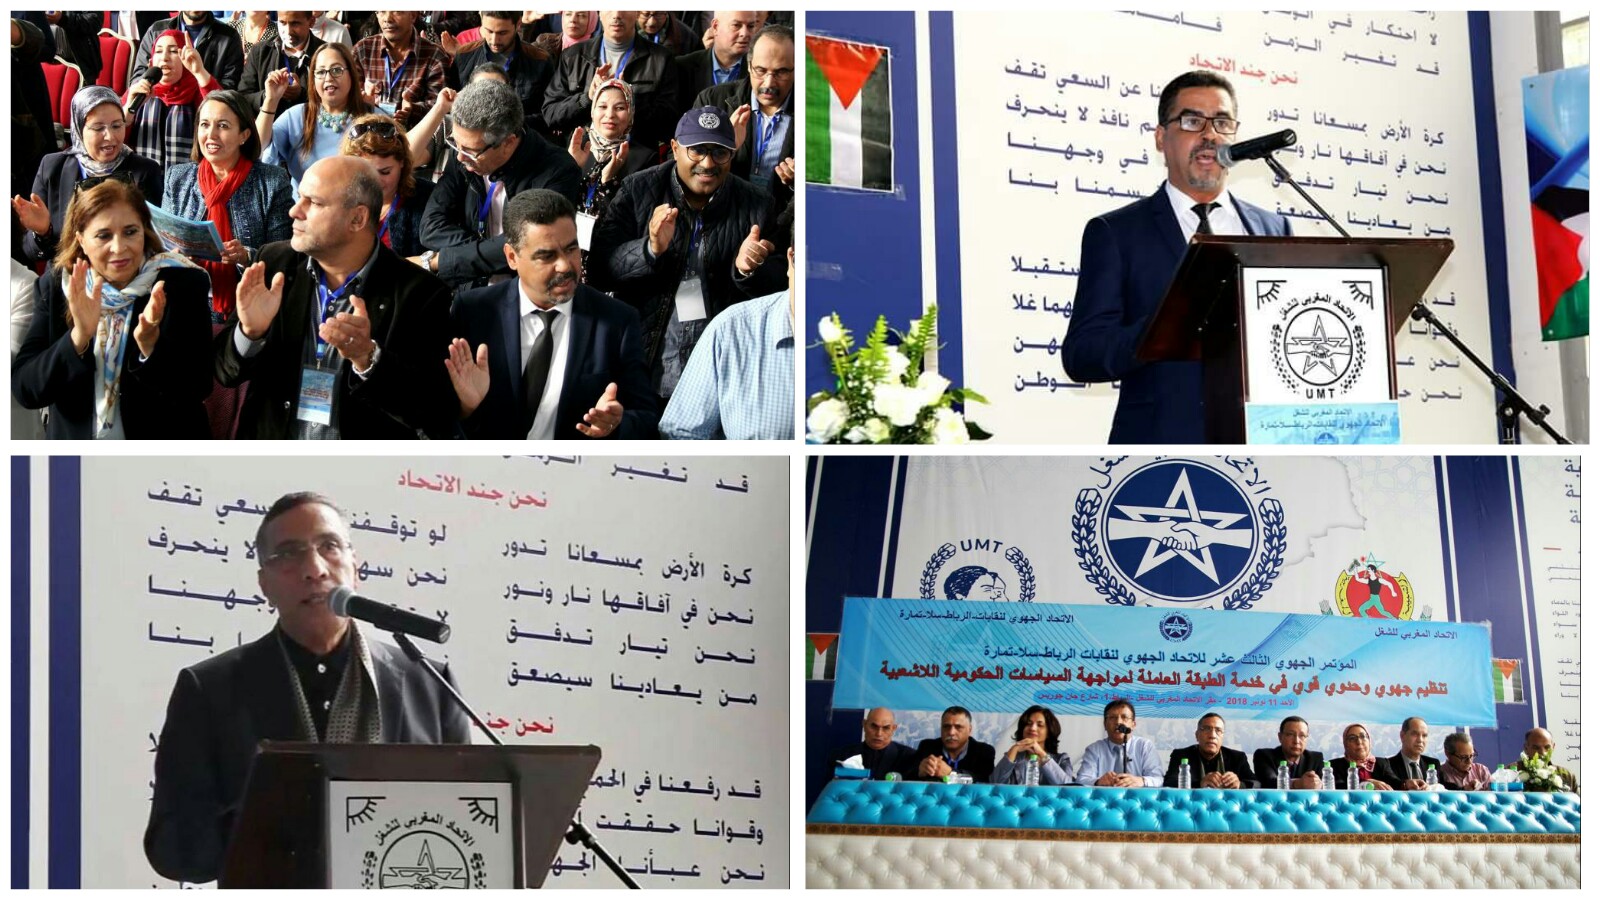 الاتحاد المغربي للشغل يعقد مؤتمره الجهوي الثالث بمشاركة وازنة للقيادات النقابية